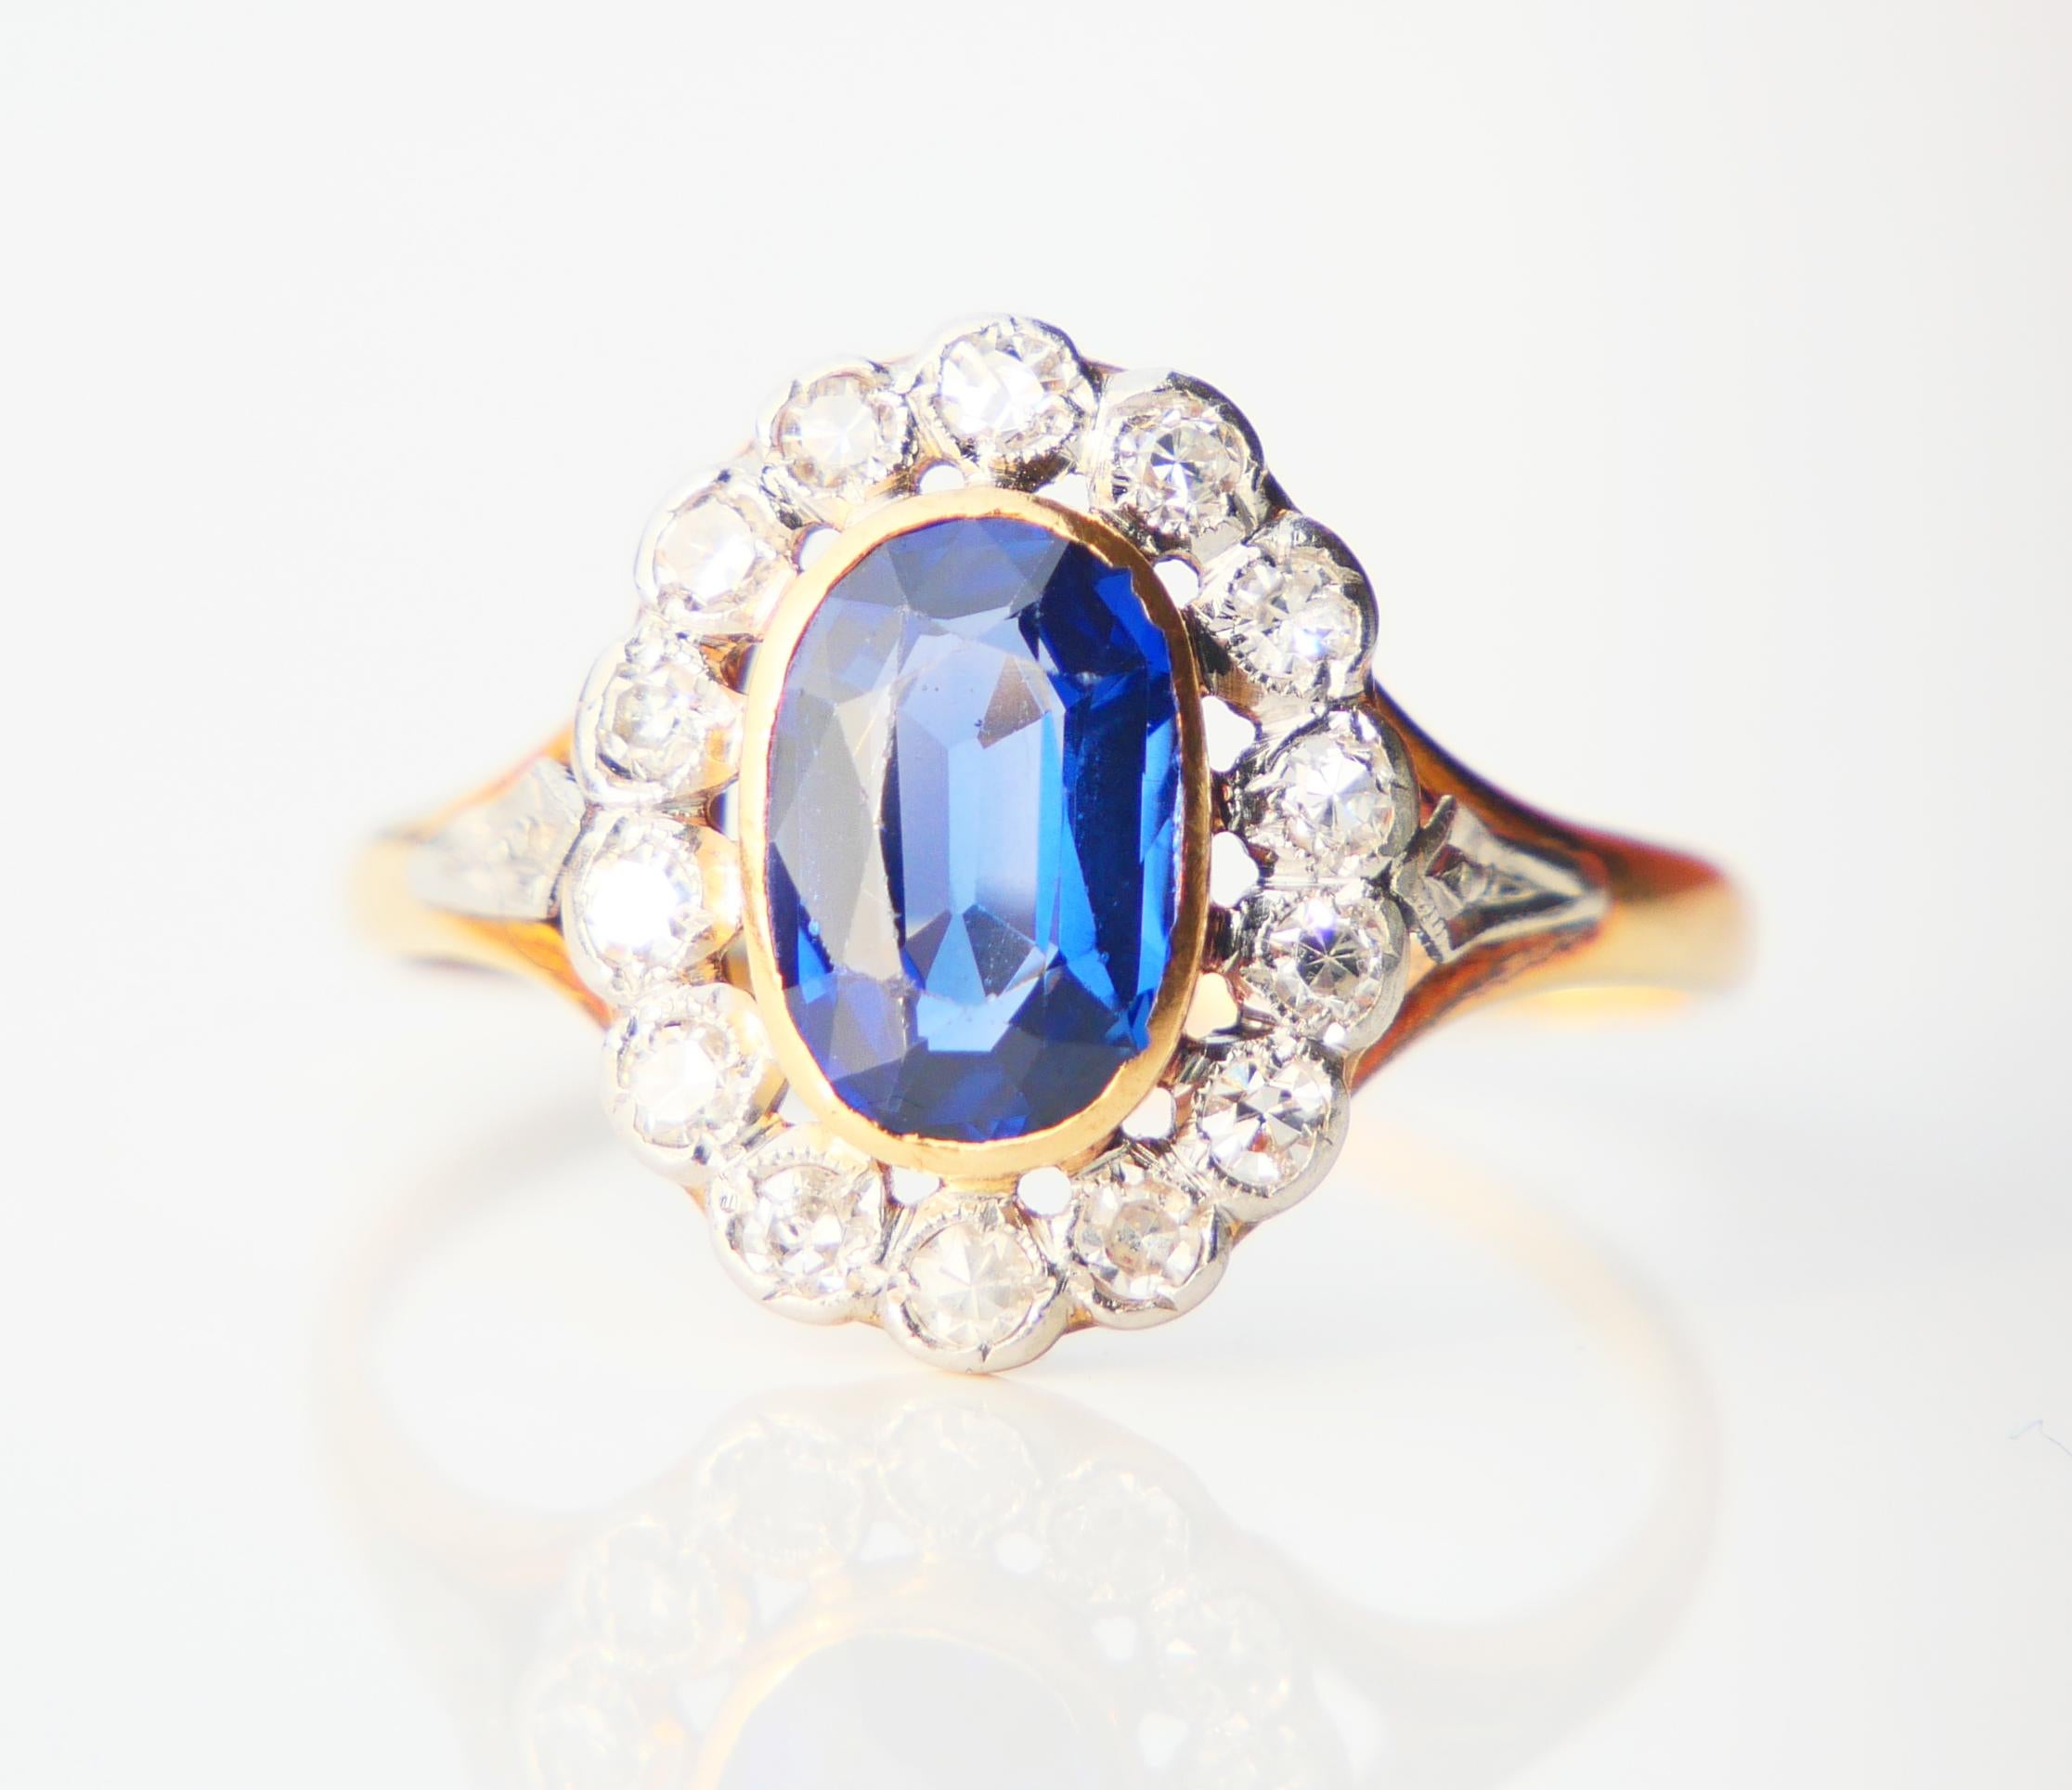 Magnifique bague halo des années 1920-1930 en or jaune 18 carats avec un saphir bleu fait en laboratoire et 14 diamants naturels dans une monture en platine.

Saphir de taille ovale, couleur bleu moyen, mesure : 9 mm mm x 6 mm / ca. 1.85 ct .

14